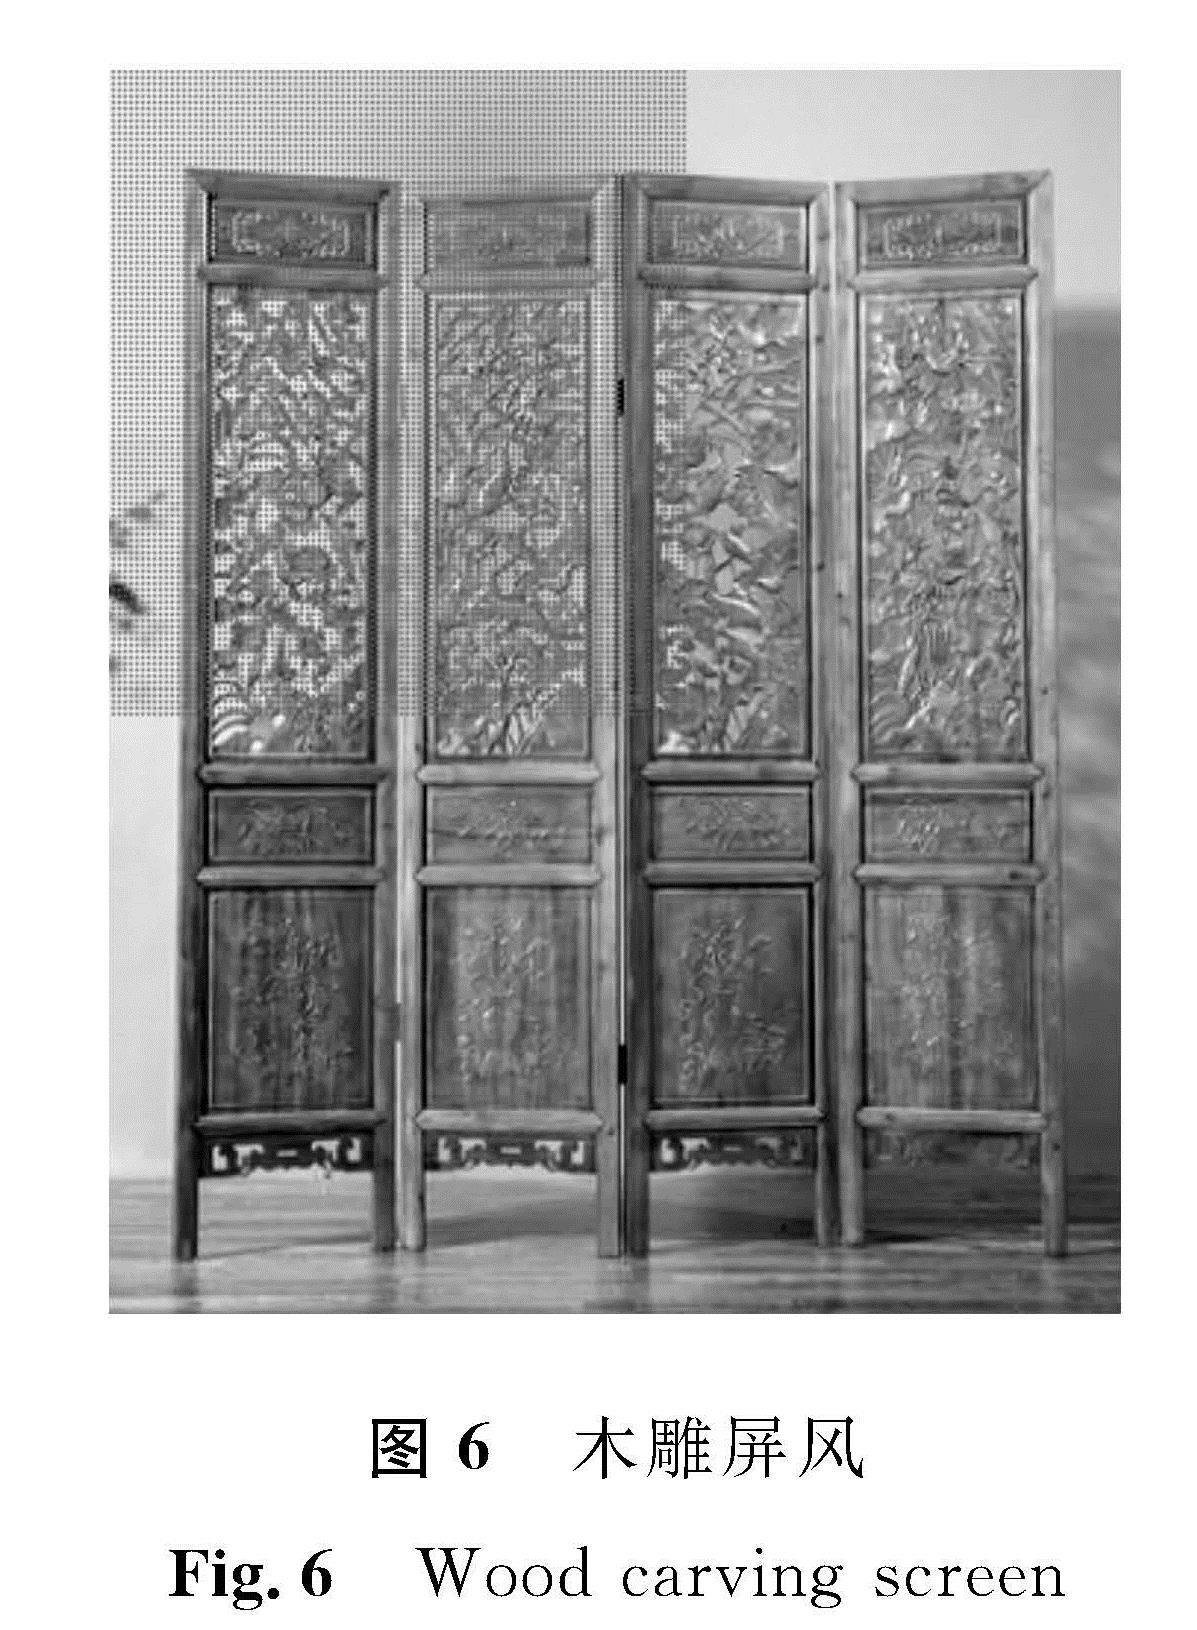 图6 木雕屏风<br/>Fig.6 Wood carving screen